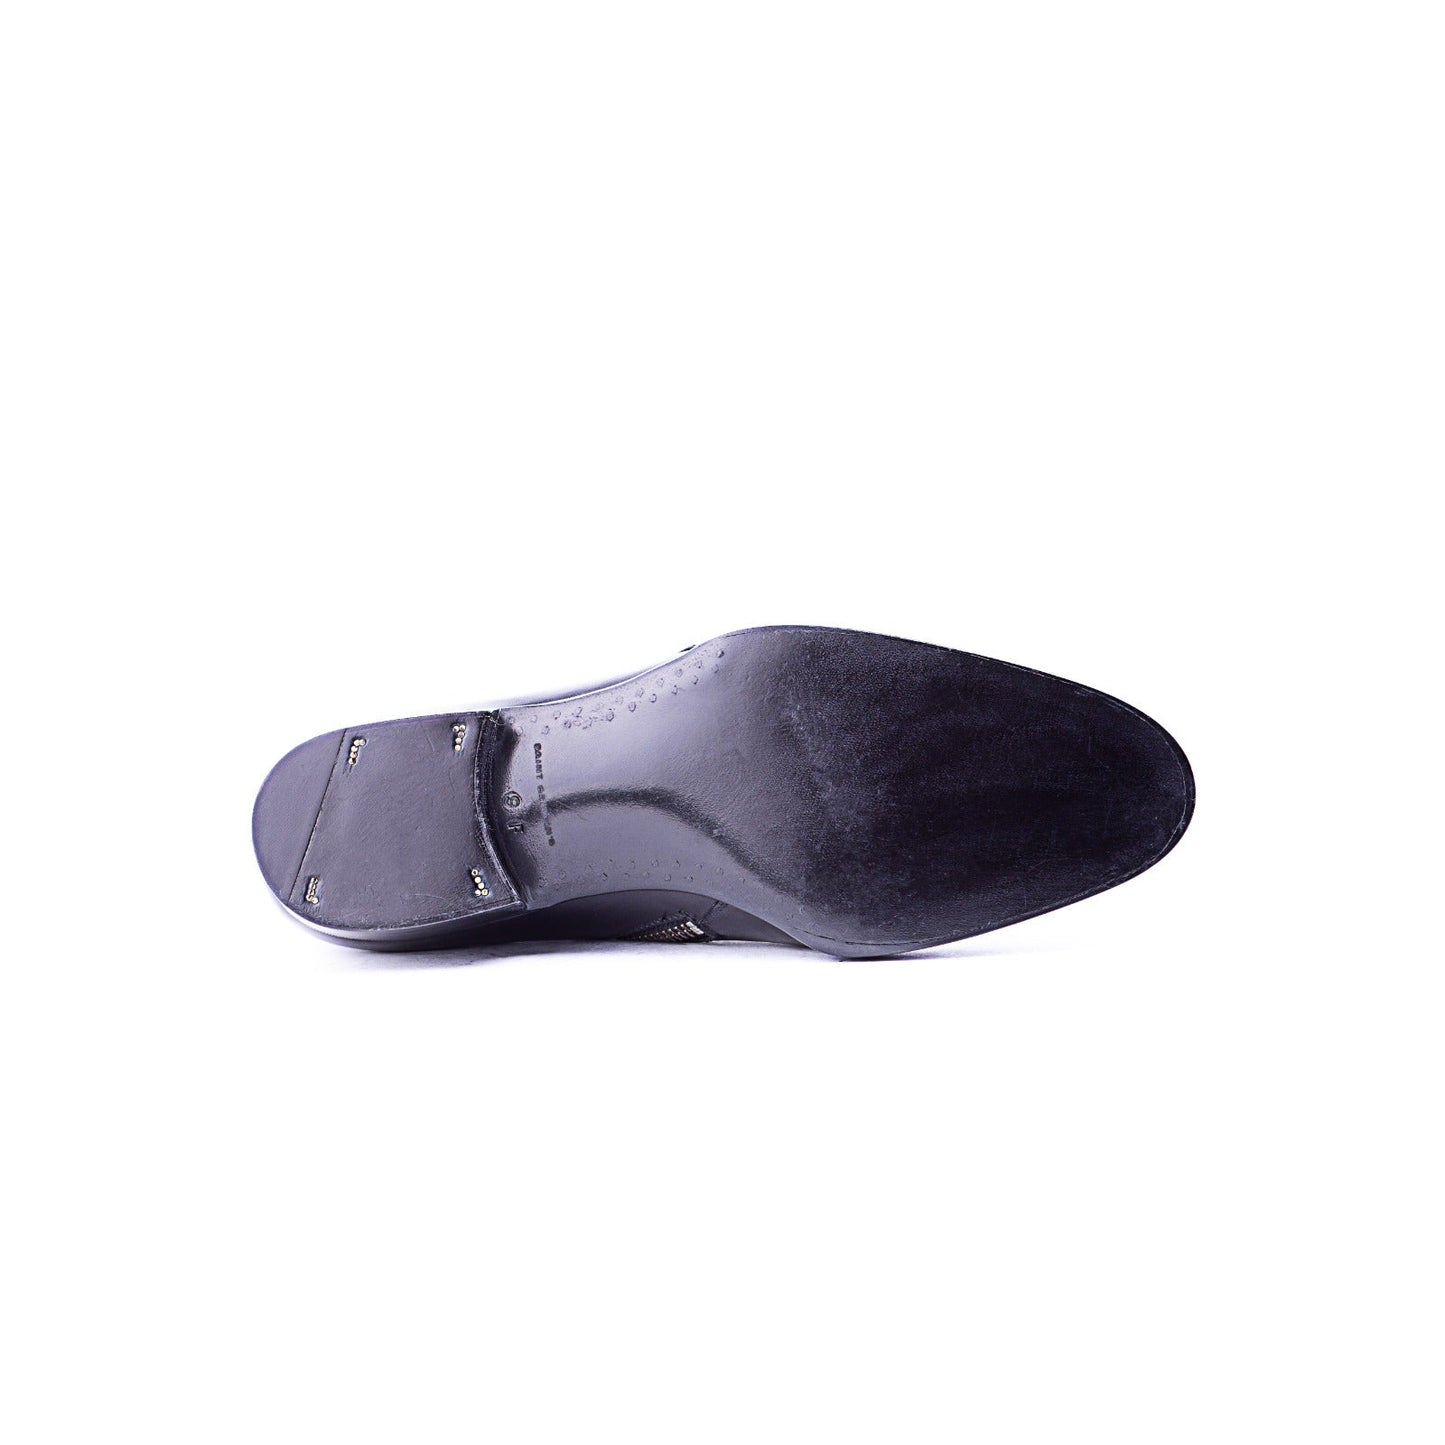 Plain boot with zipper, 4 cm higher – Saint Crispin's